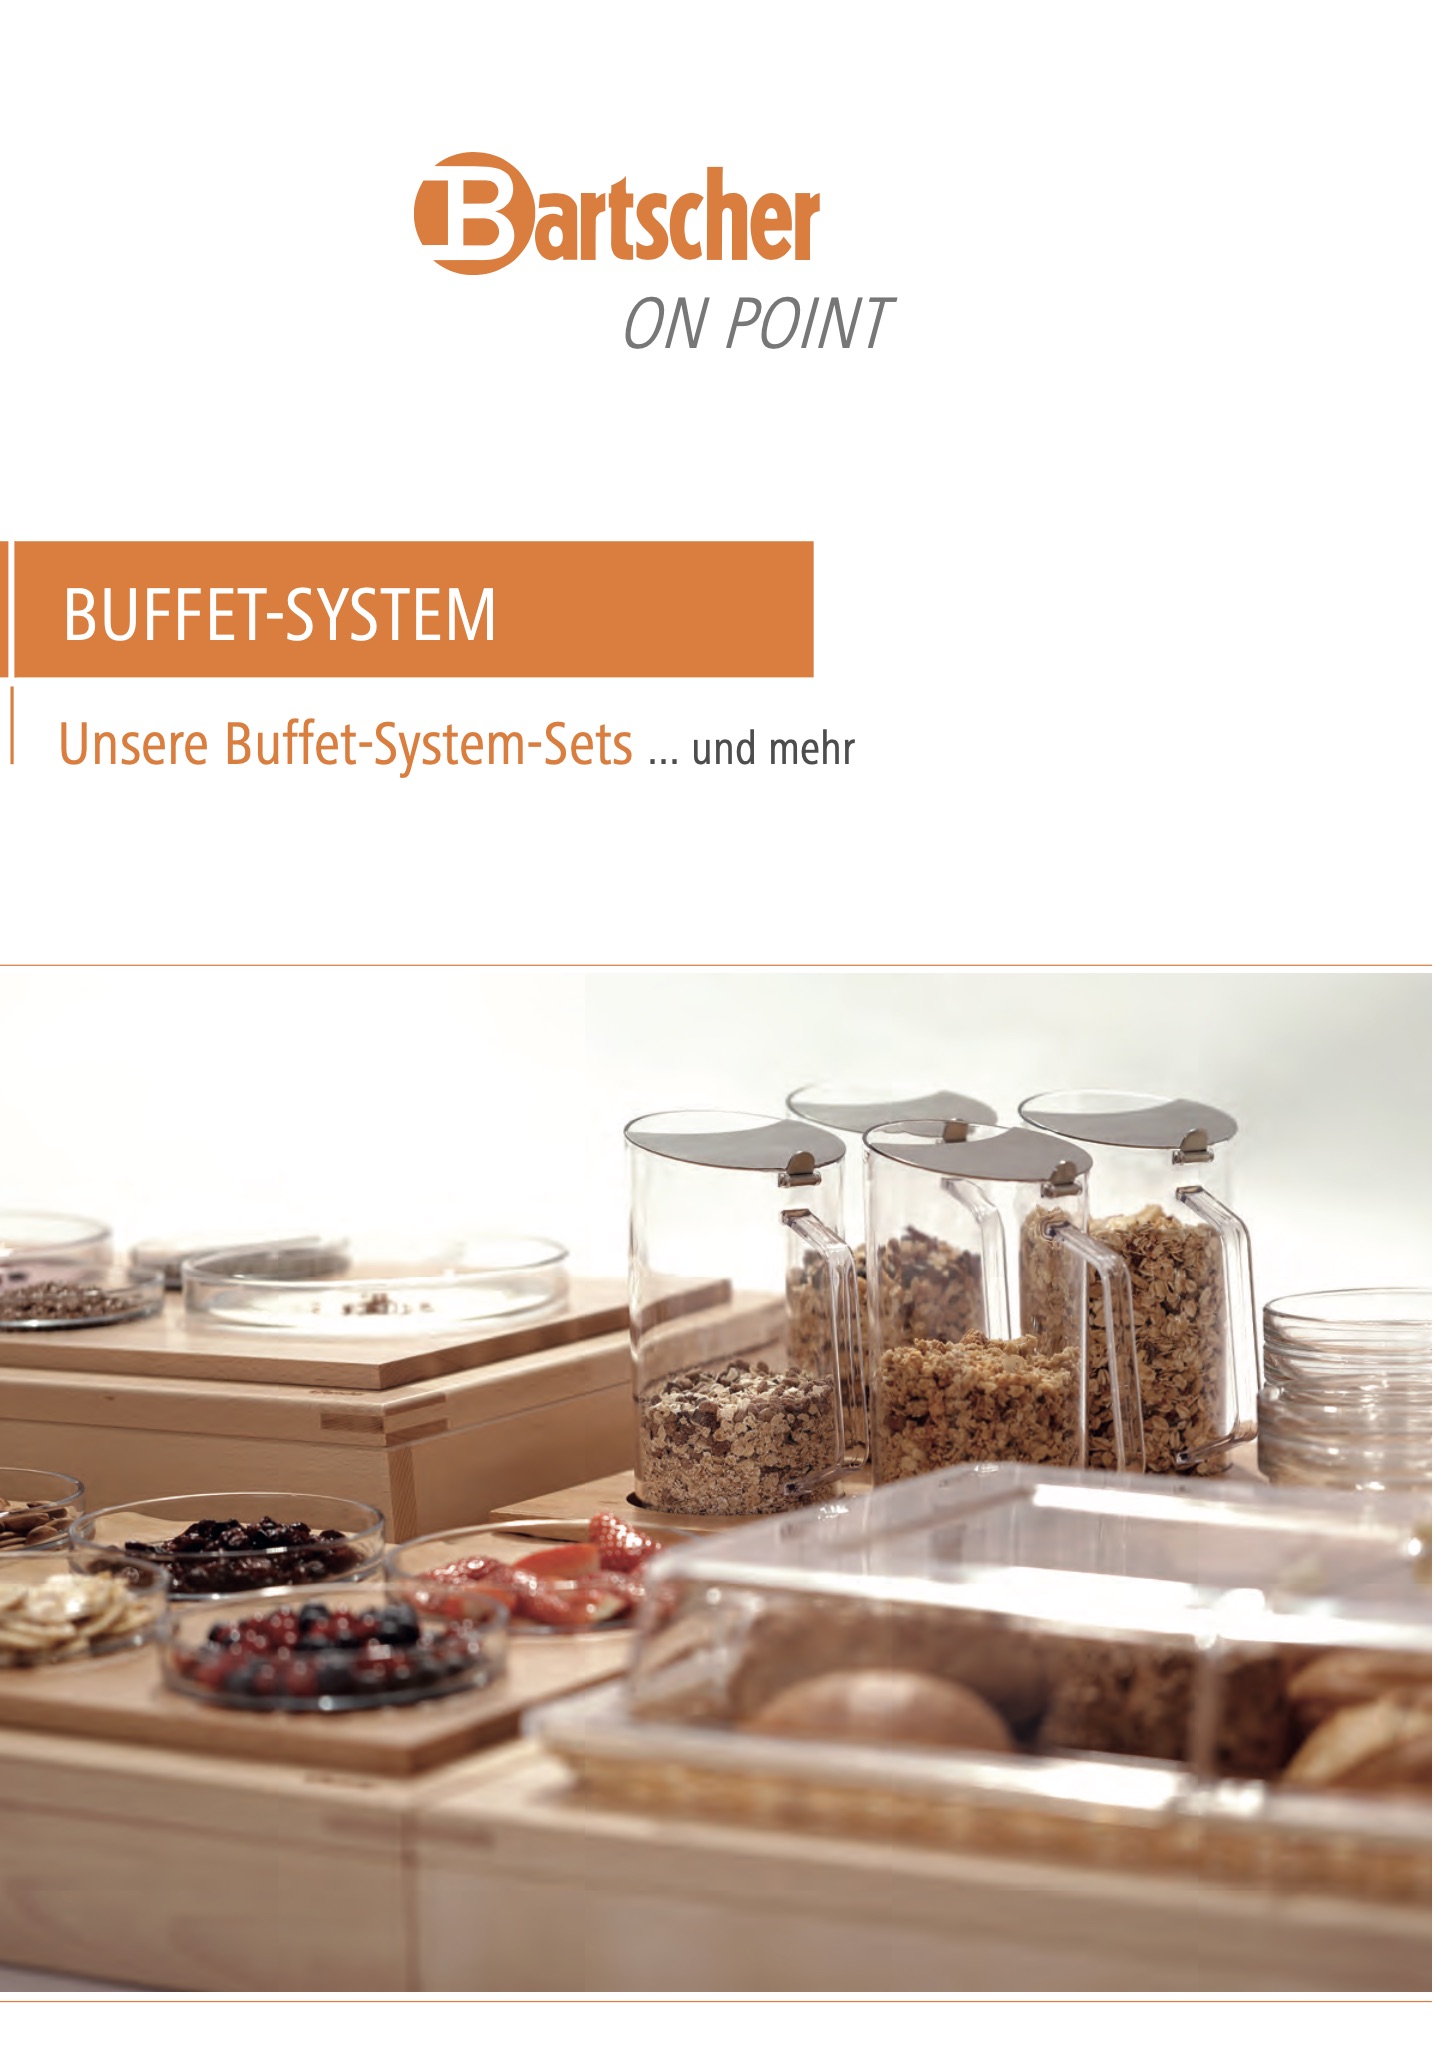 Bartscher Buffet-System Prospekt PDF